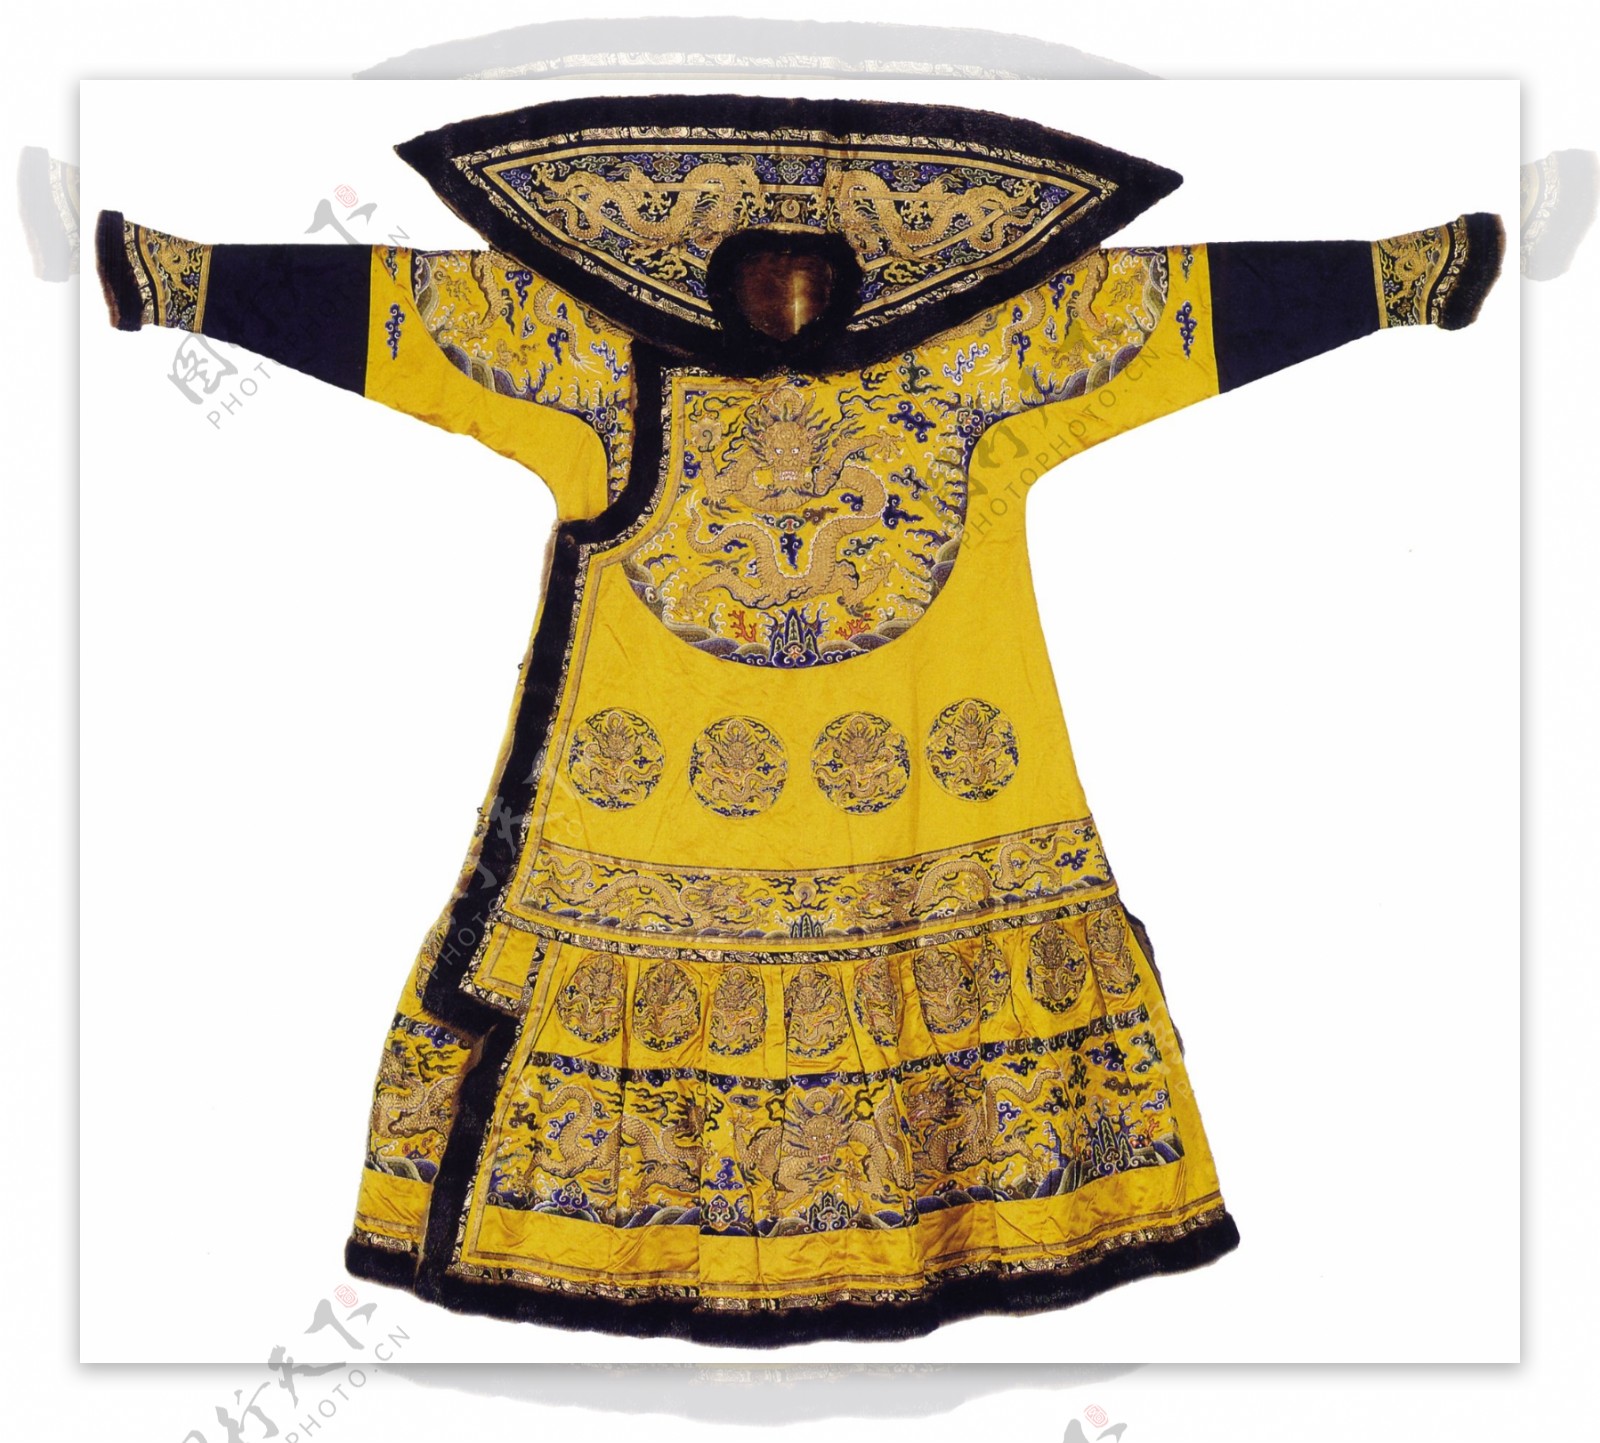 中式龙袍布纹贴图